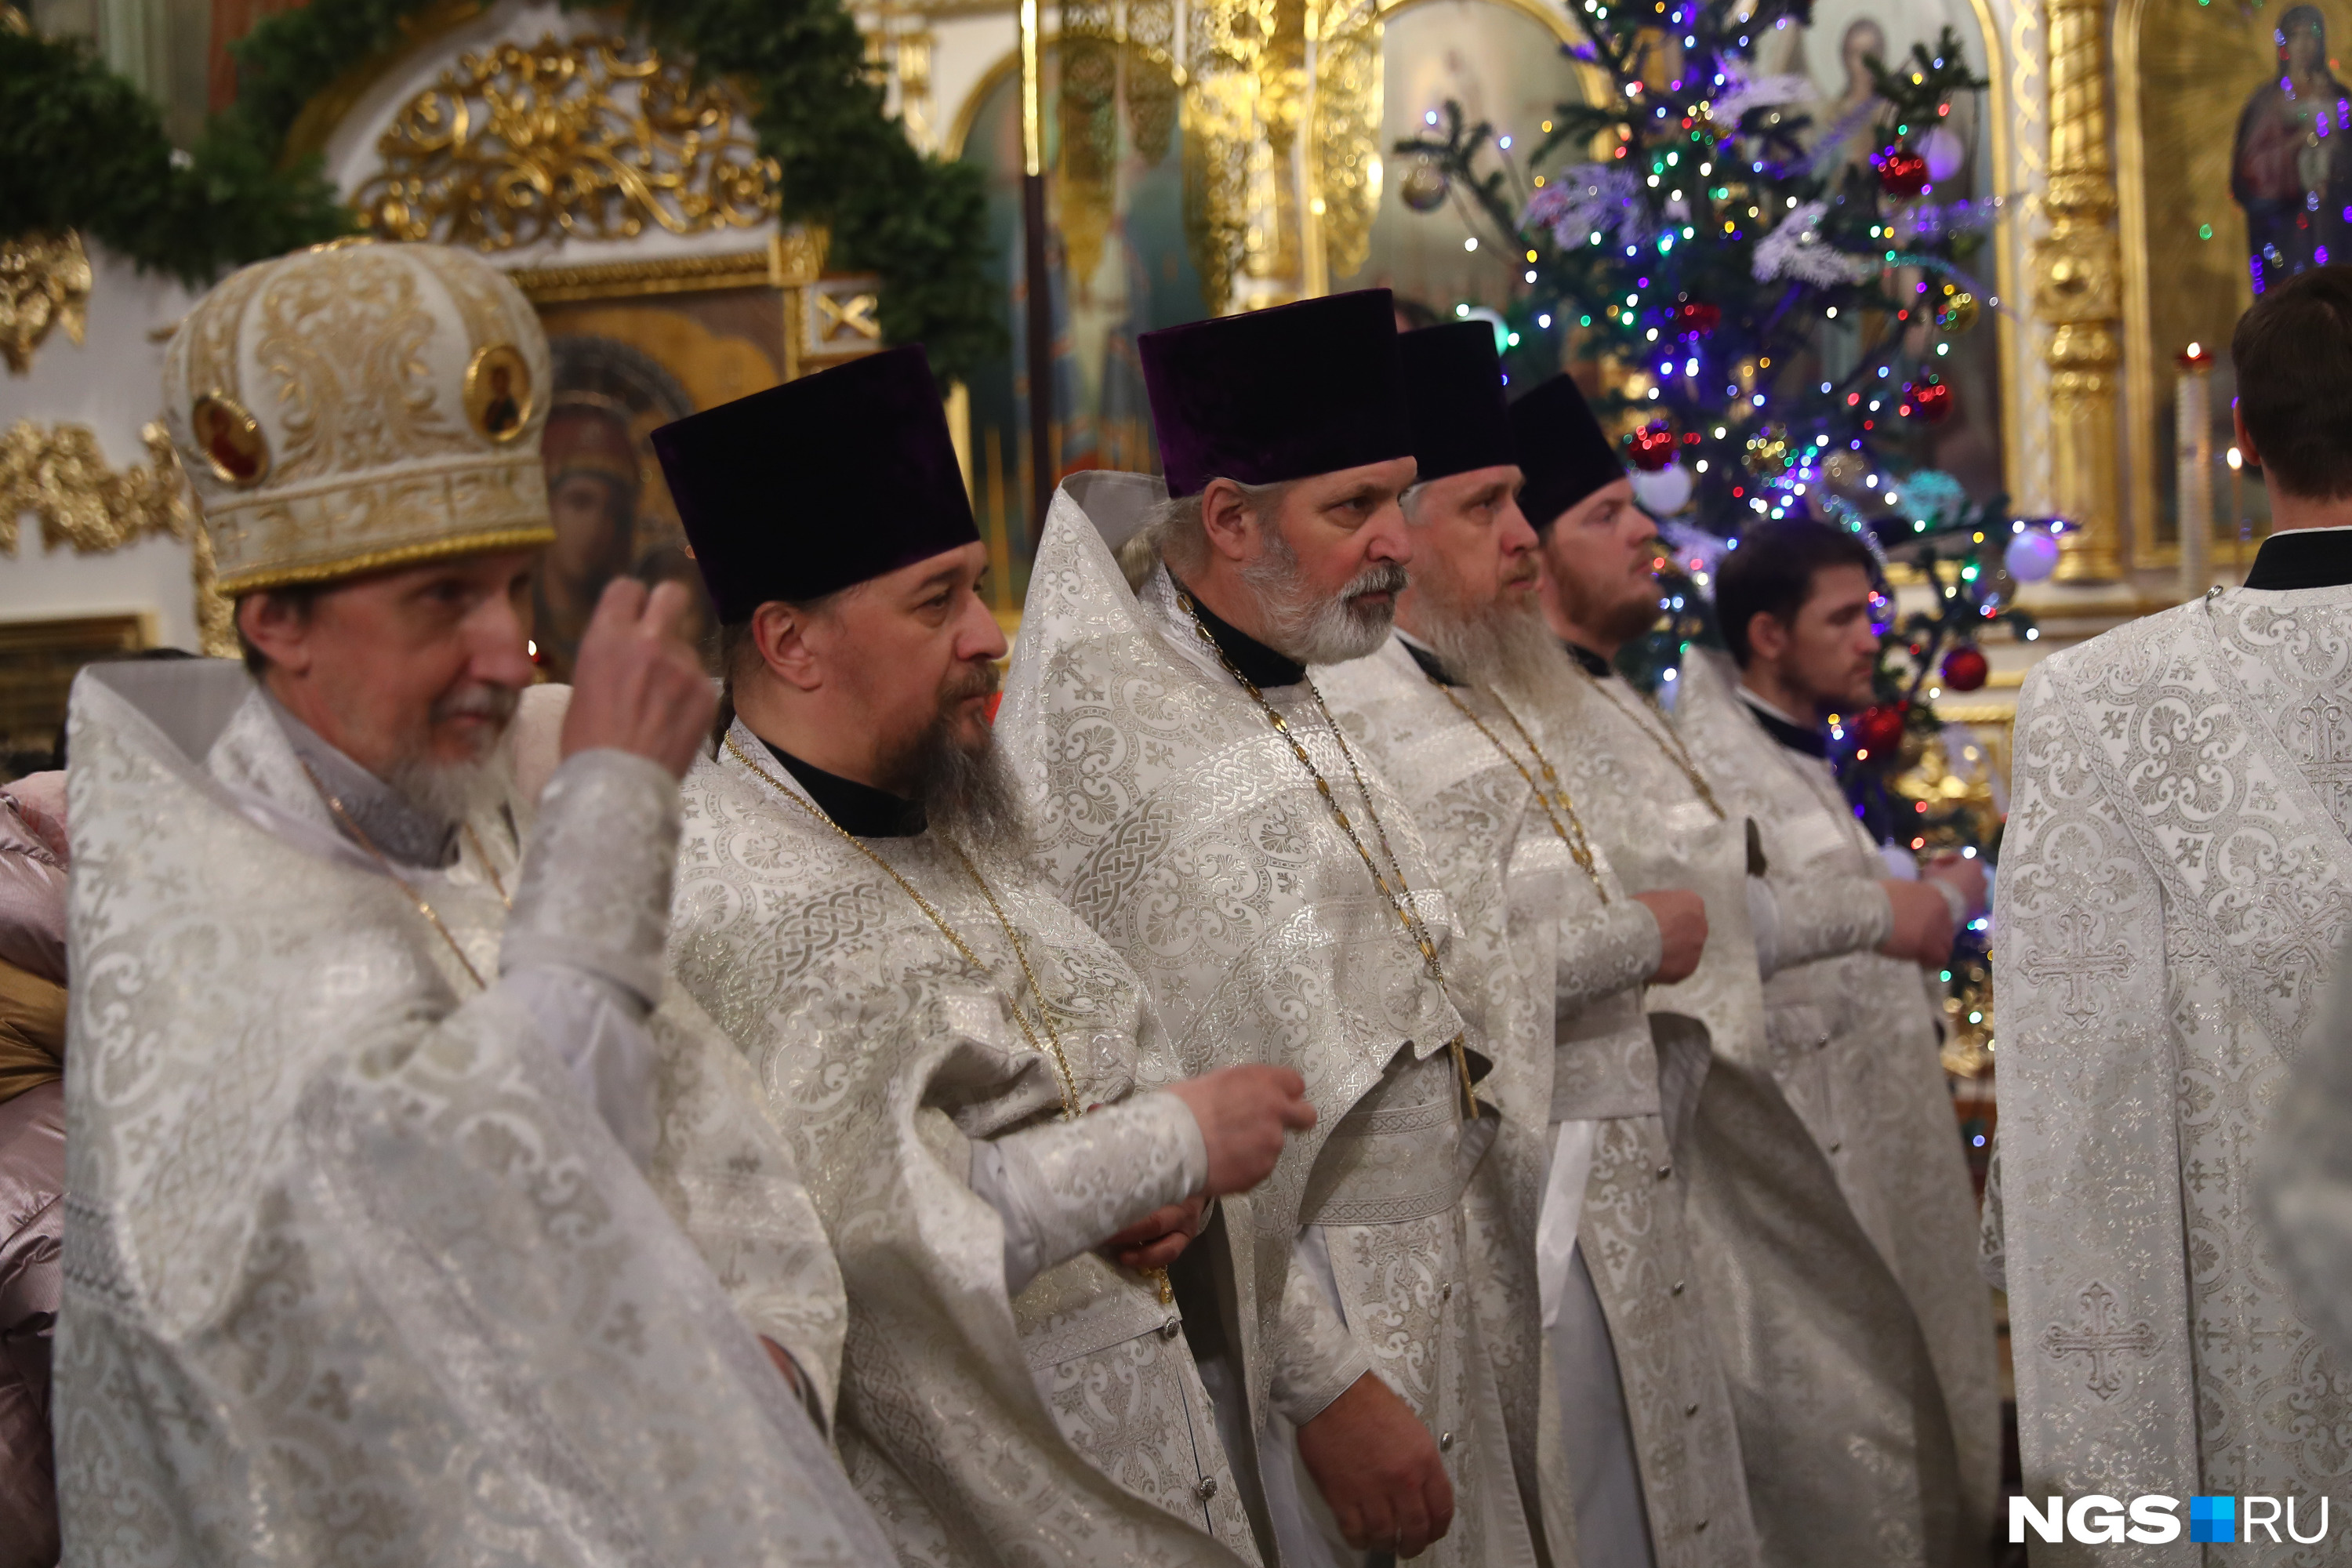 Рождество Христово — второй по значимости после Пасхи праздник в православной церкви